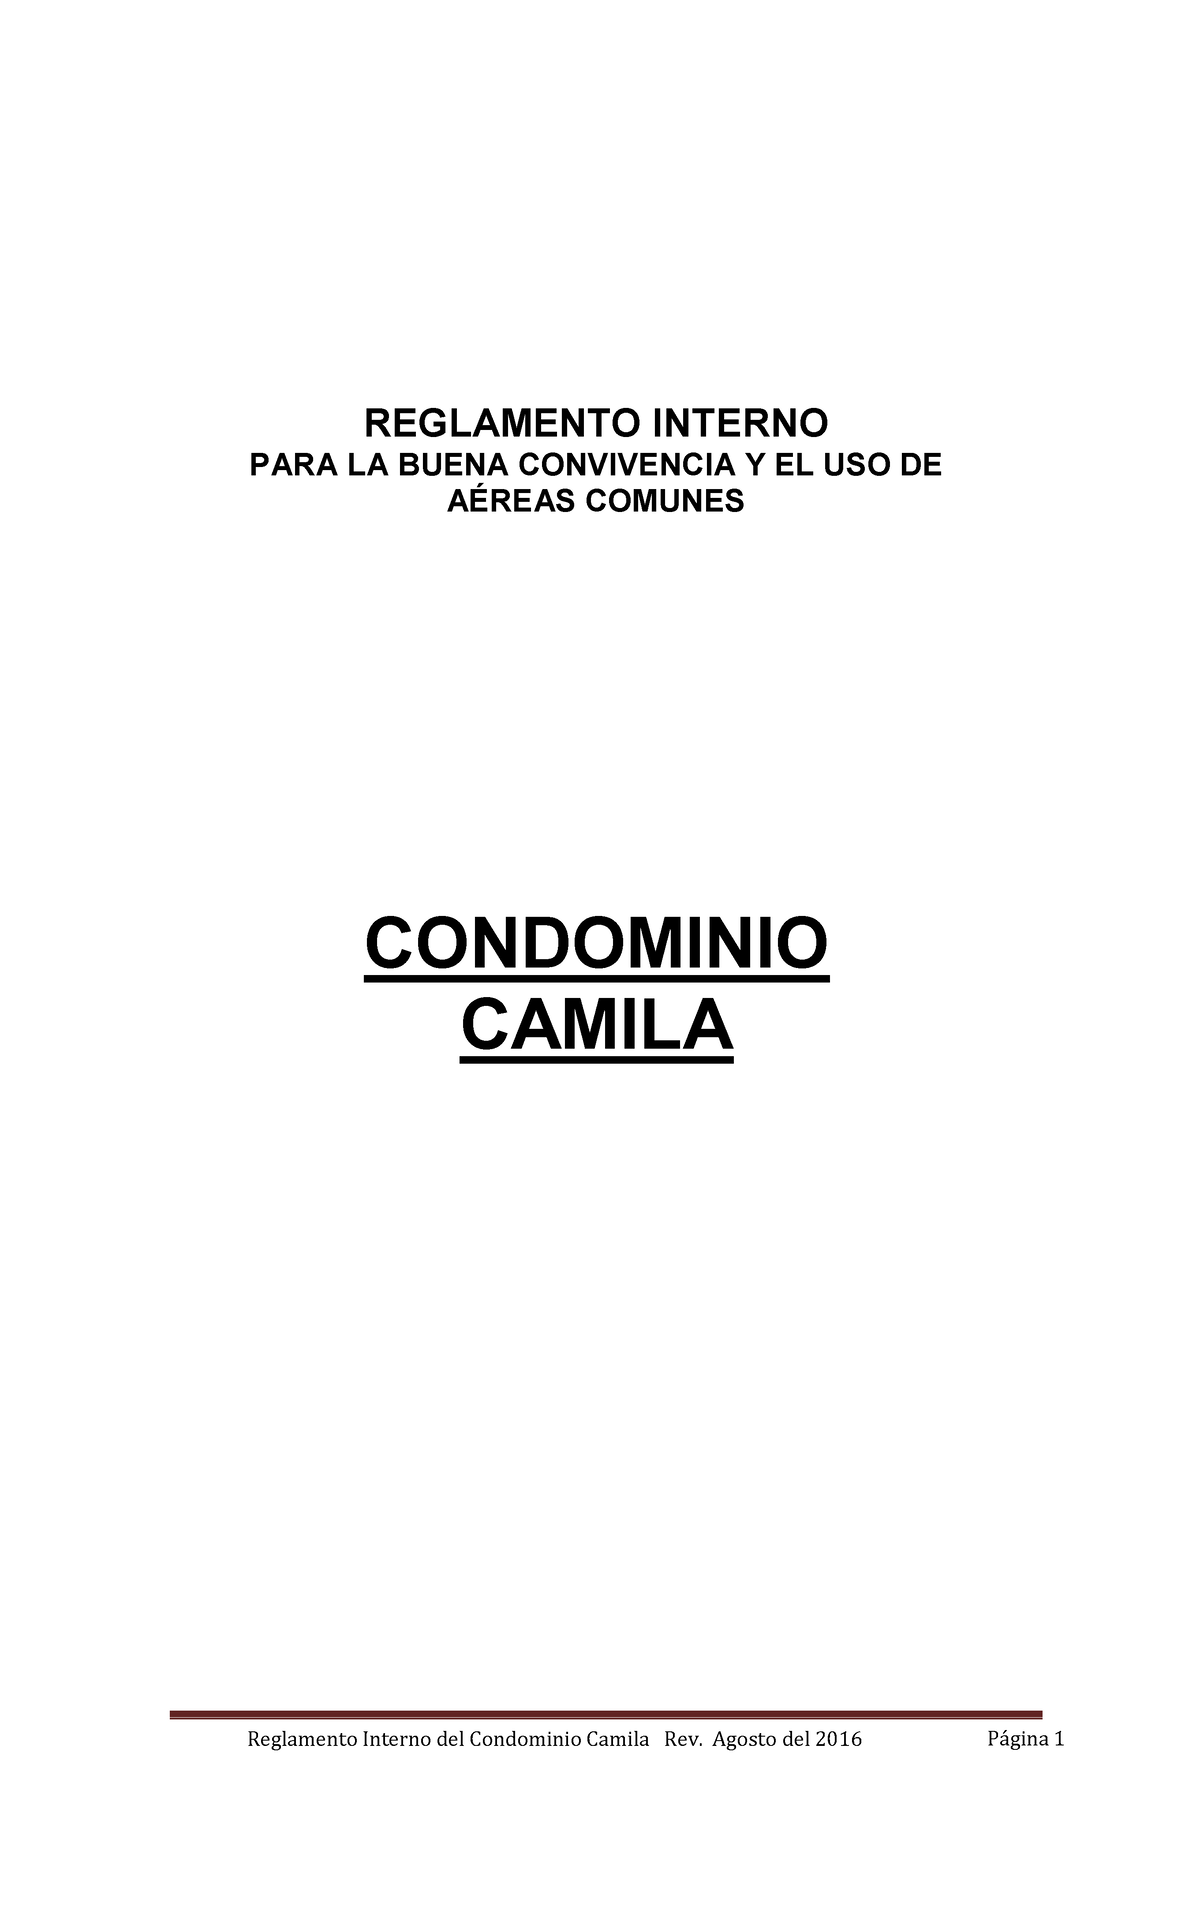 Reglamento Condominio Camila Convivencia Reglamento Interno Para La Buena Convivencia Y El Uso 6612